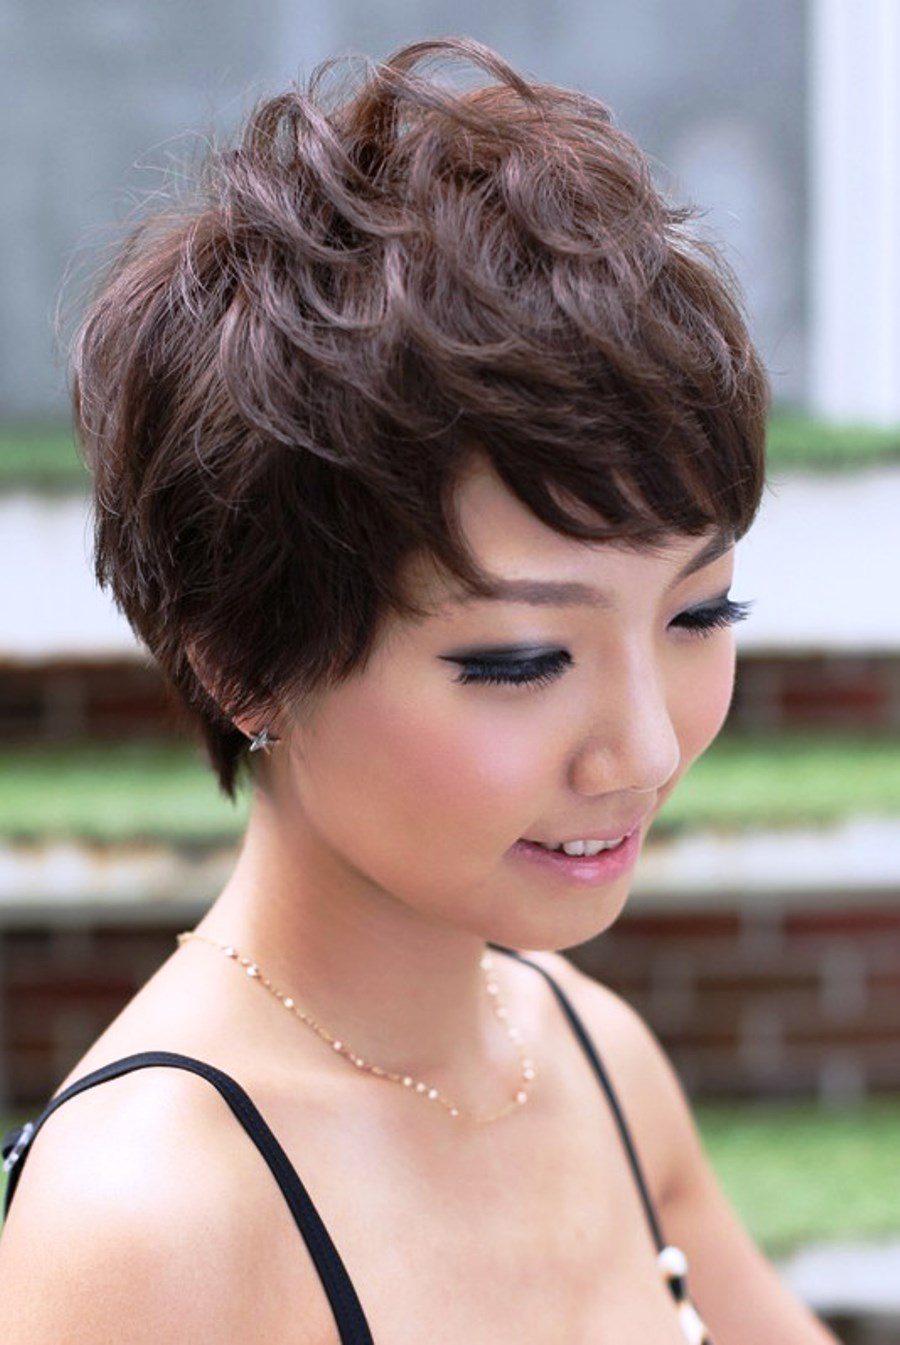 Asian Pixie Haircut